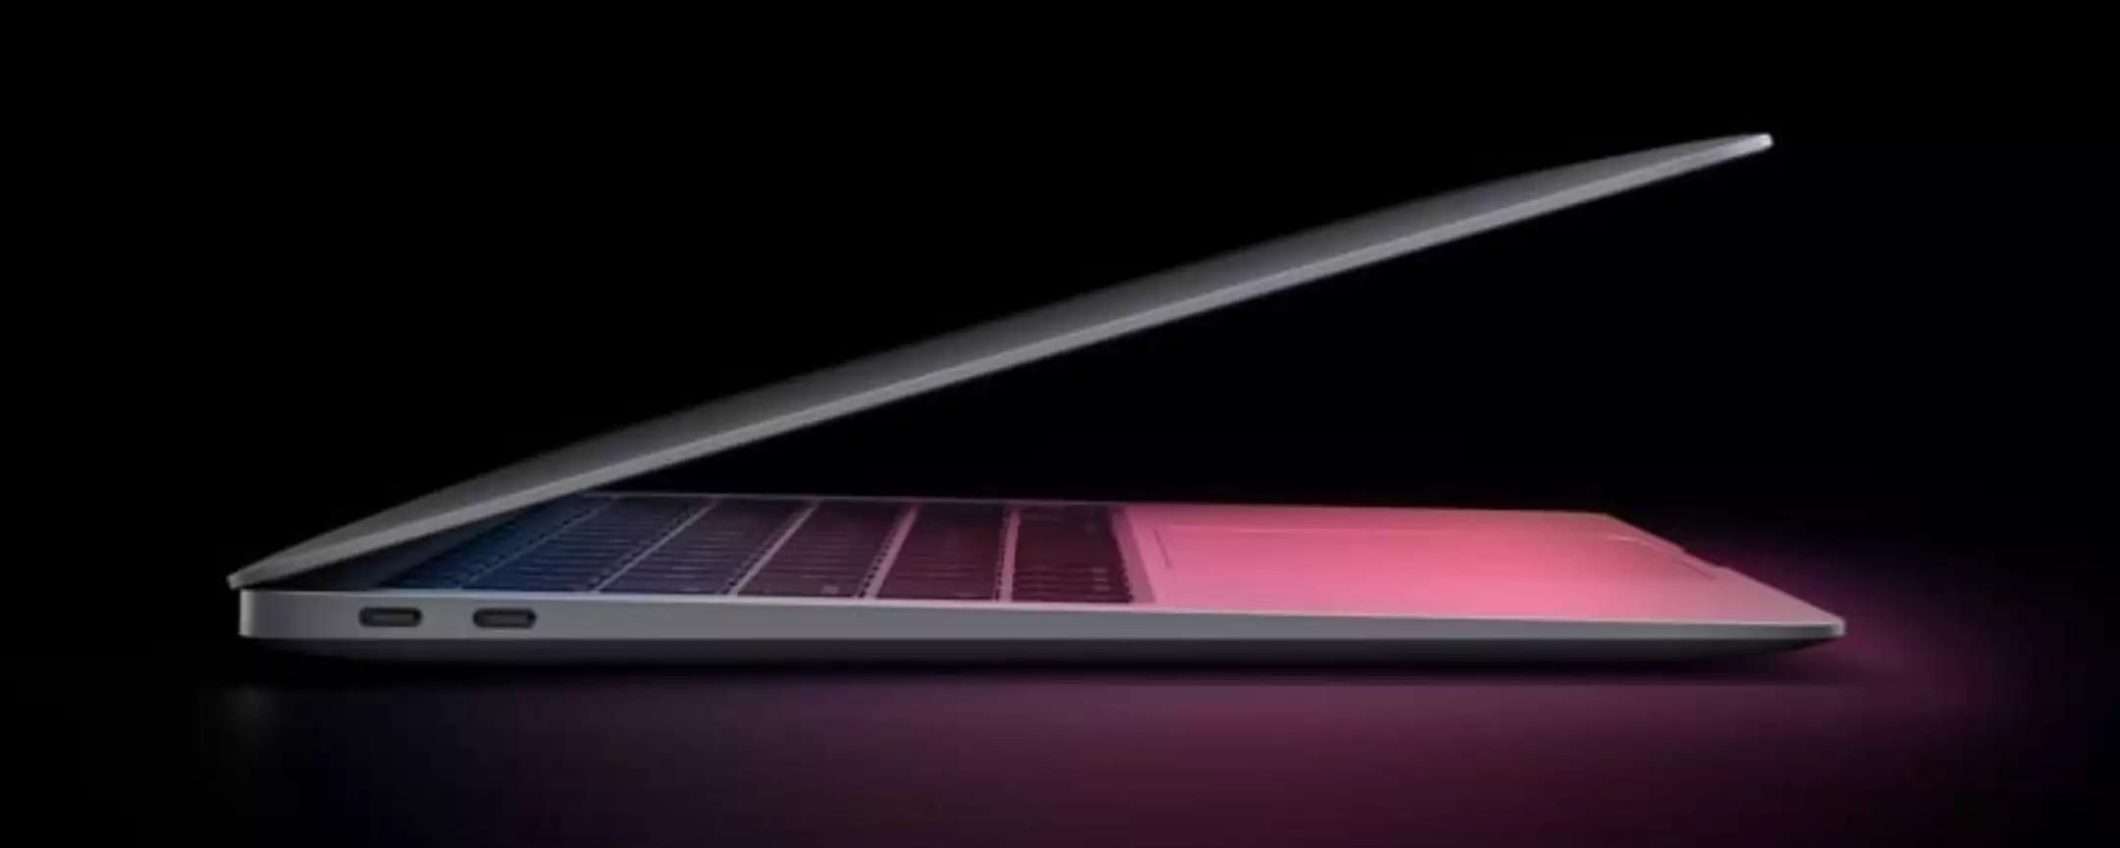 MacBook Air M1: in OFFERTA LAMPO al prezzo di 899€: è DA PRENDERE SUBITO